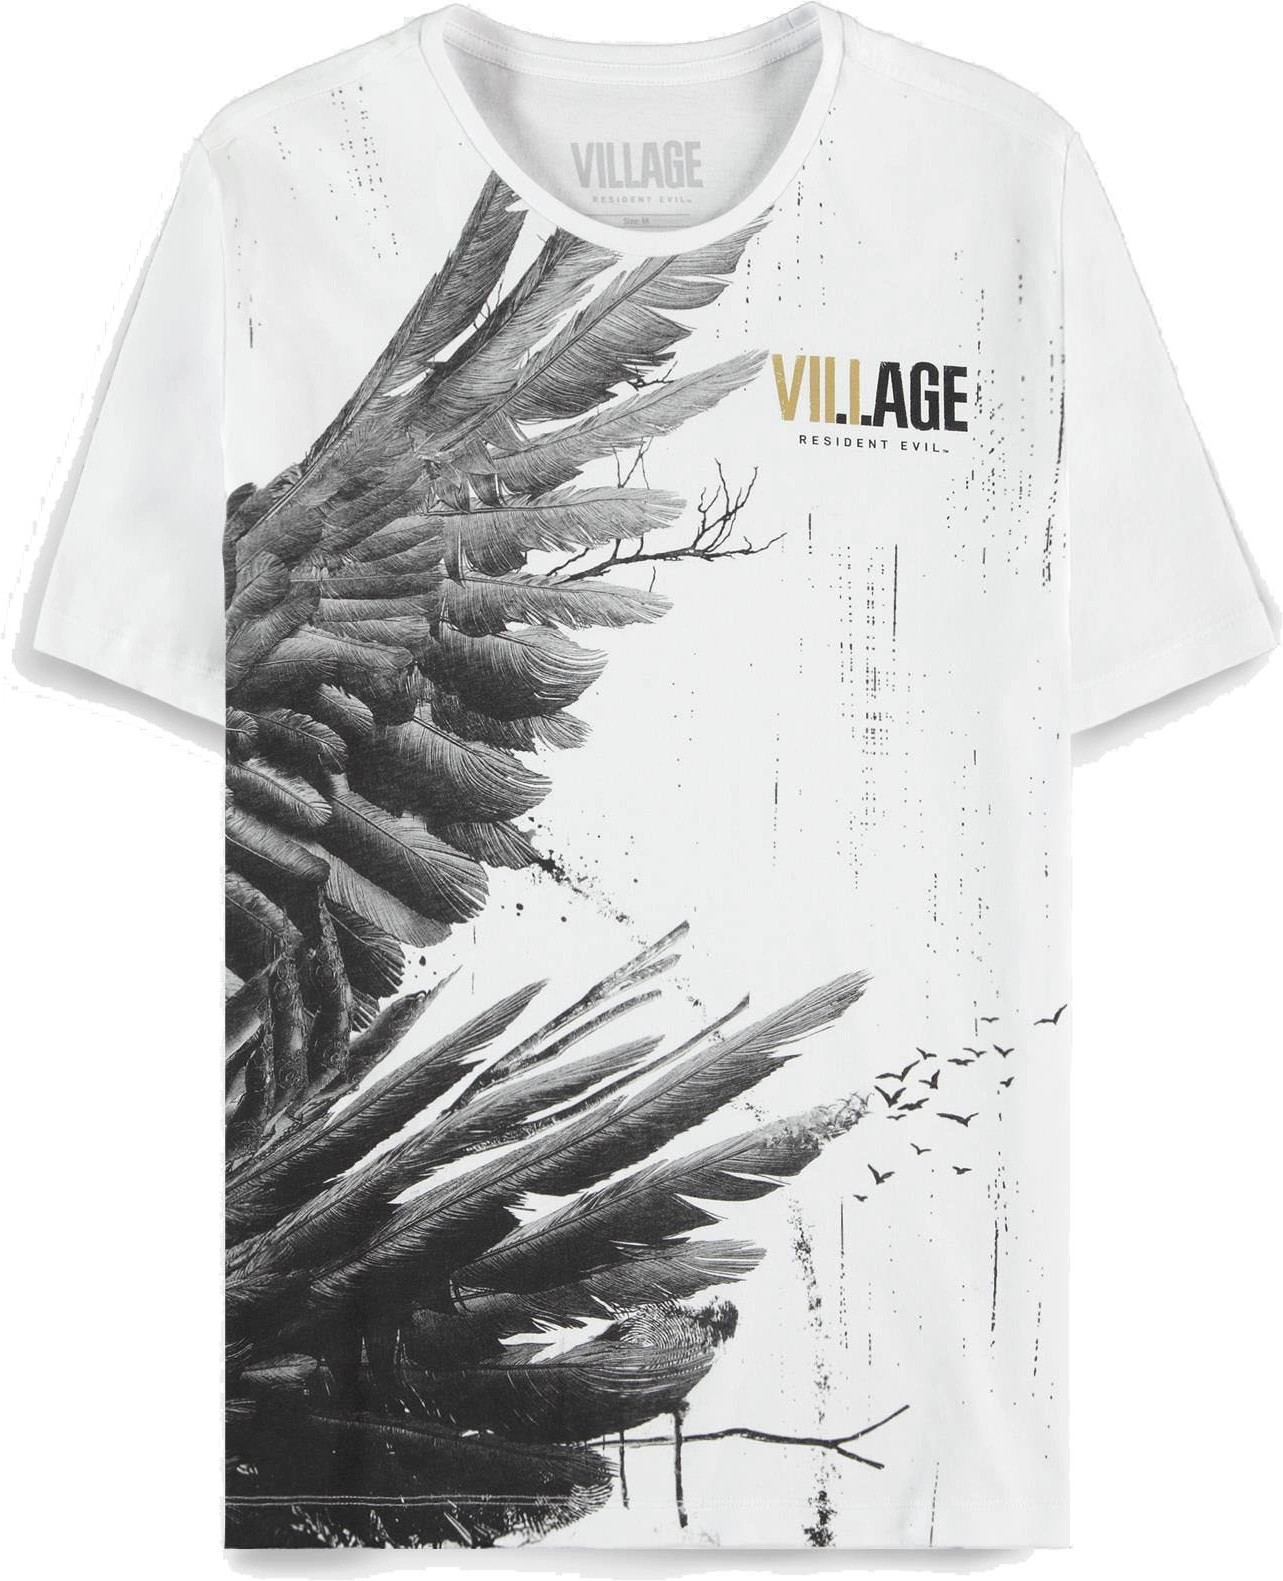 Resident Evil - Village Wings - Men's Short Sleeved T-shirt